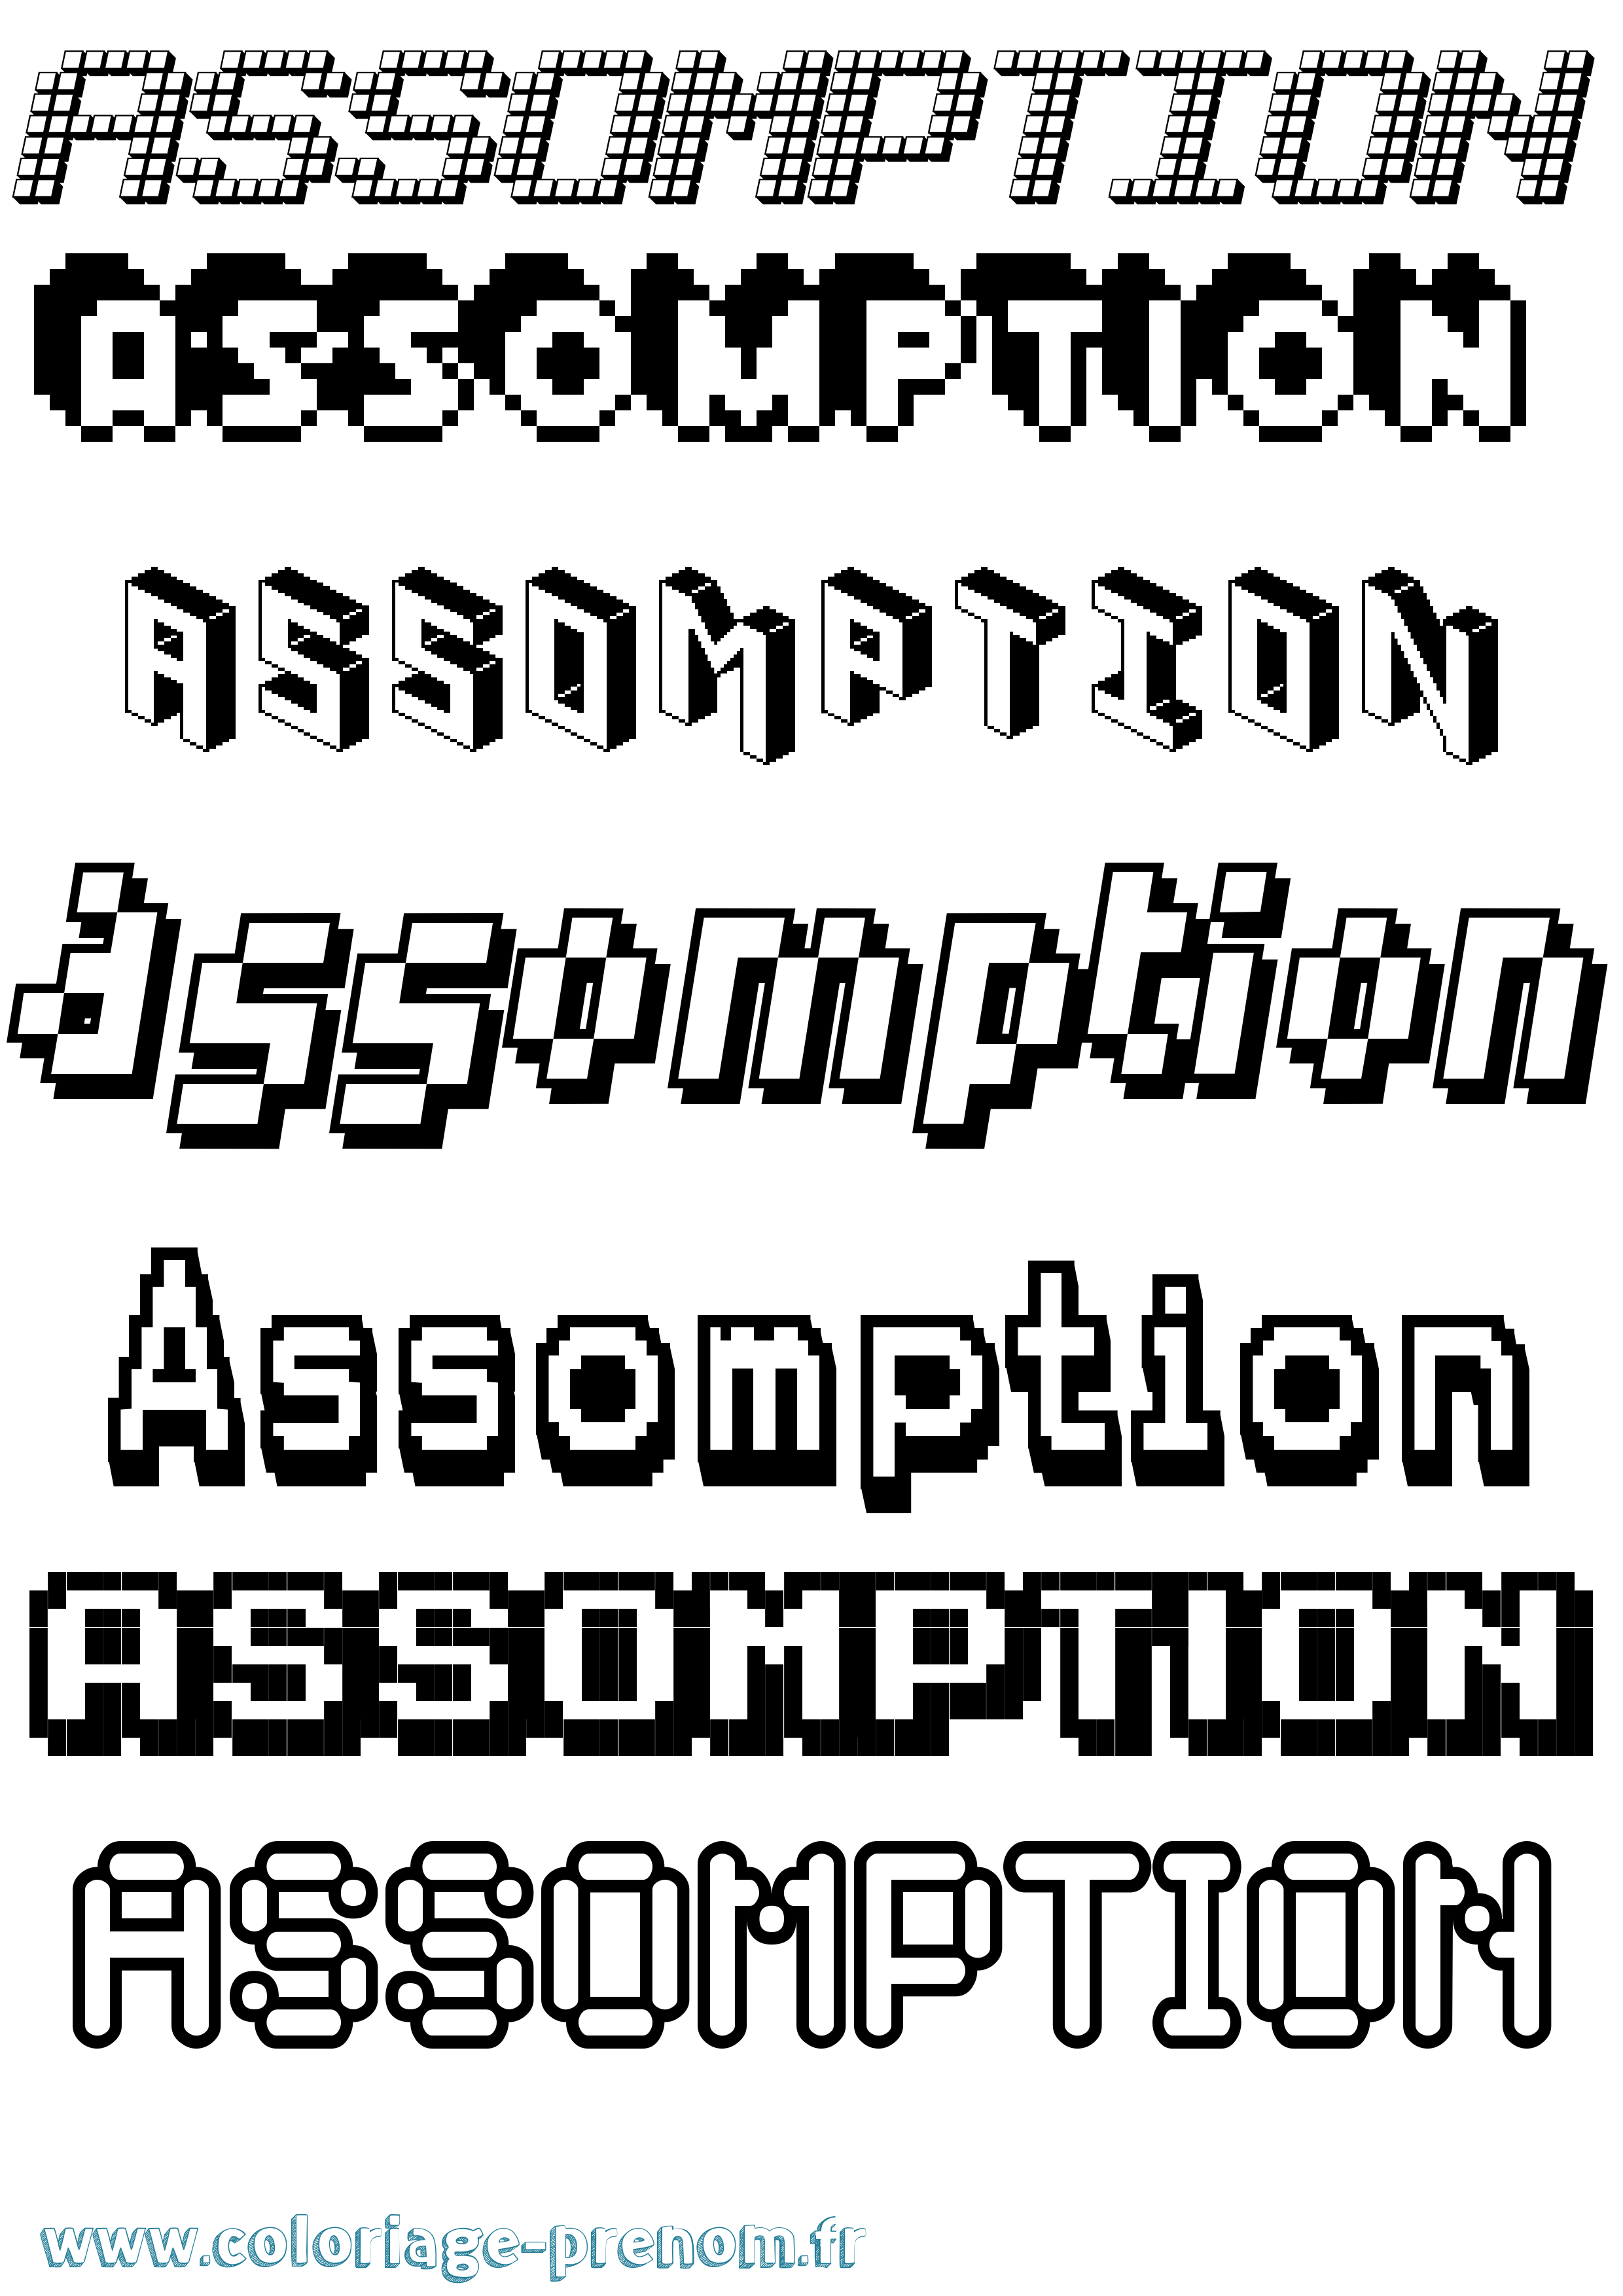 Coloriage prénom Assomption Pixel